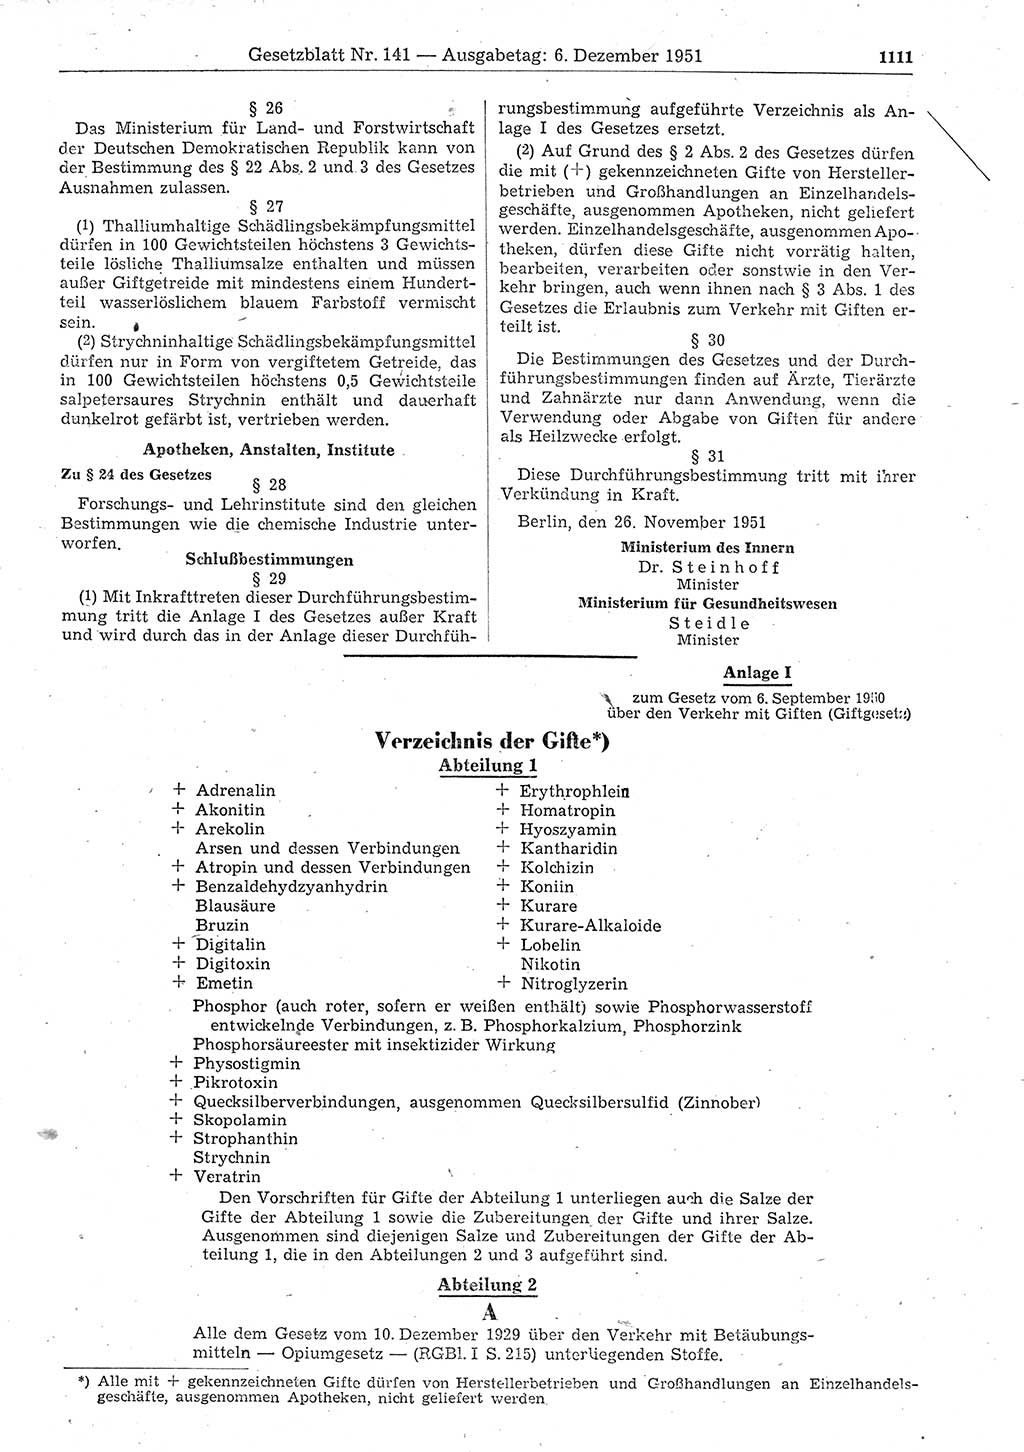 Gesetzblatt (GBl.) der Deutschen Demokratischen Republik (DDR) 1951, Seite 1111 (GBl. DDR 1951, S. 1111)